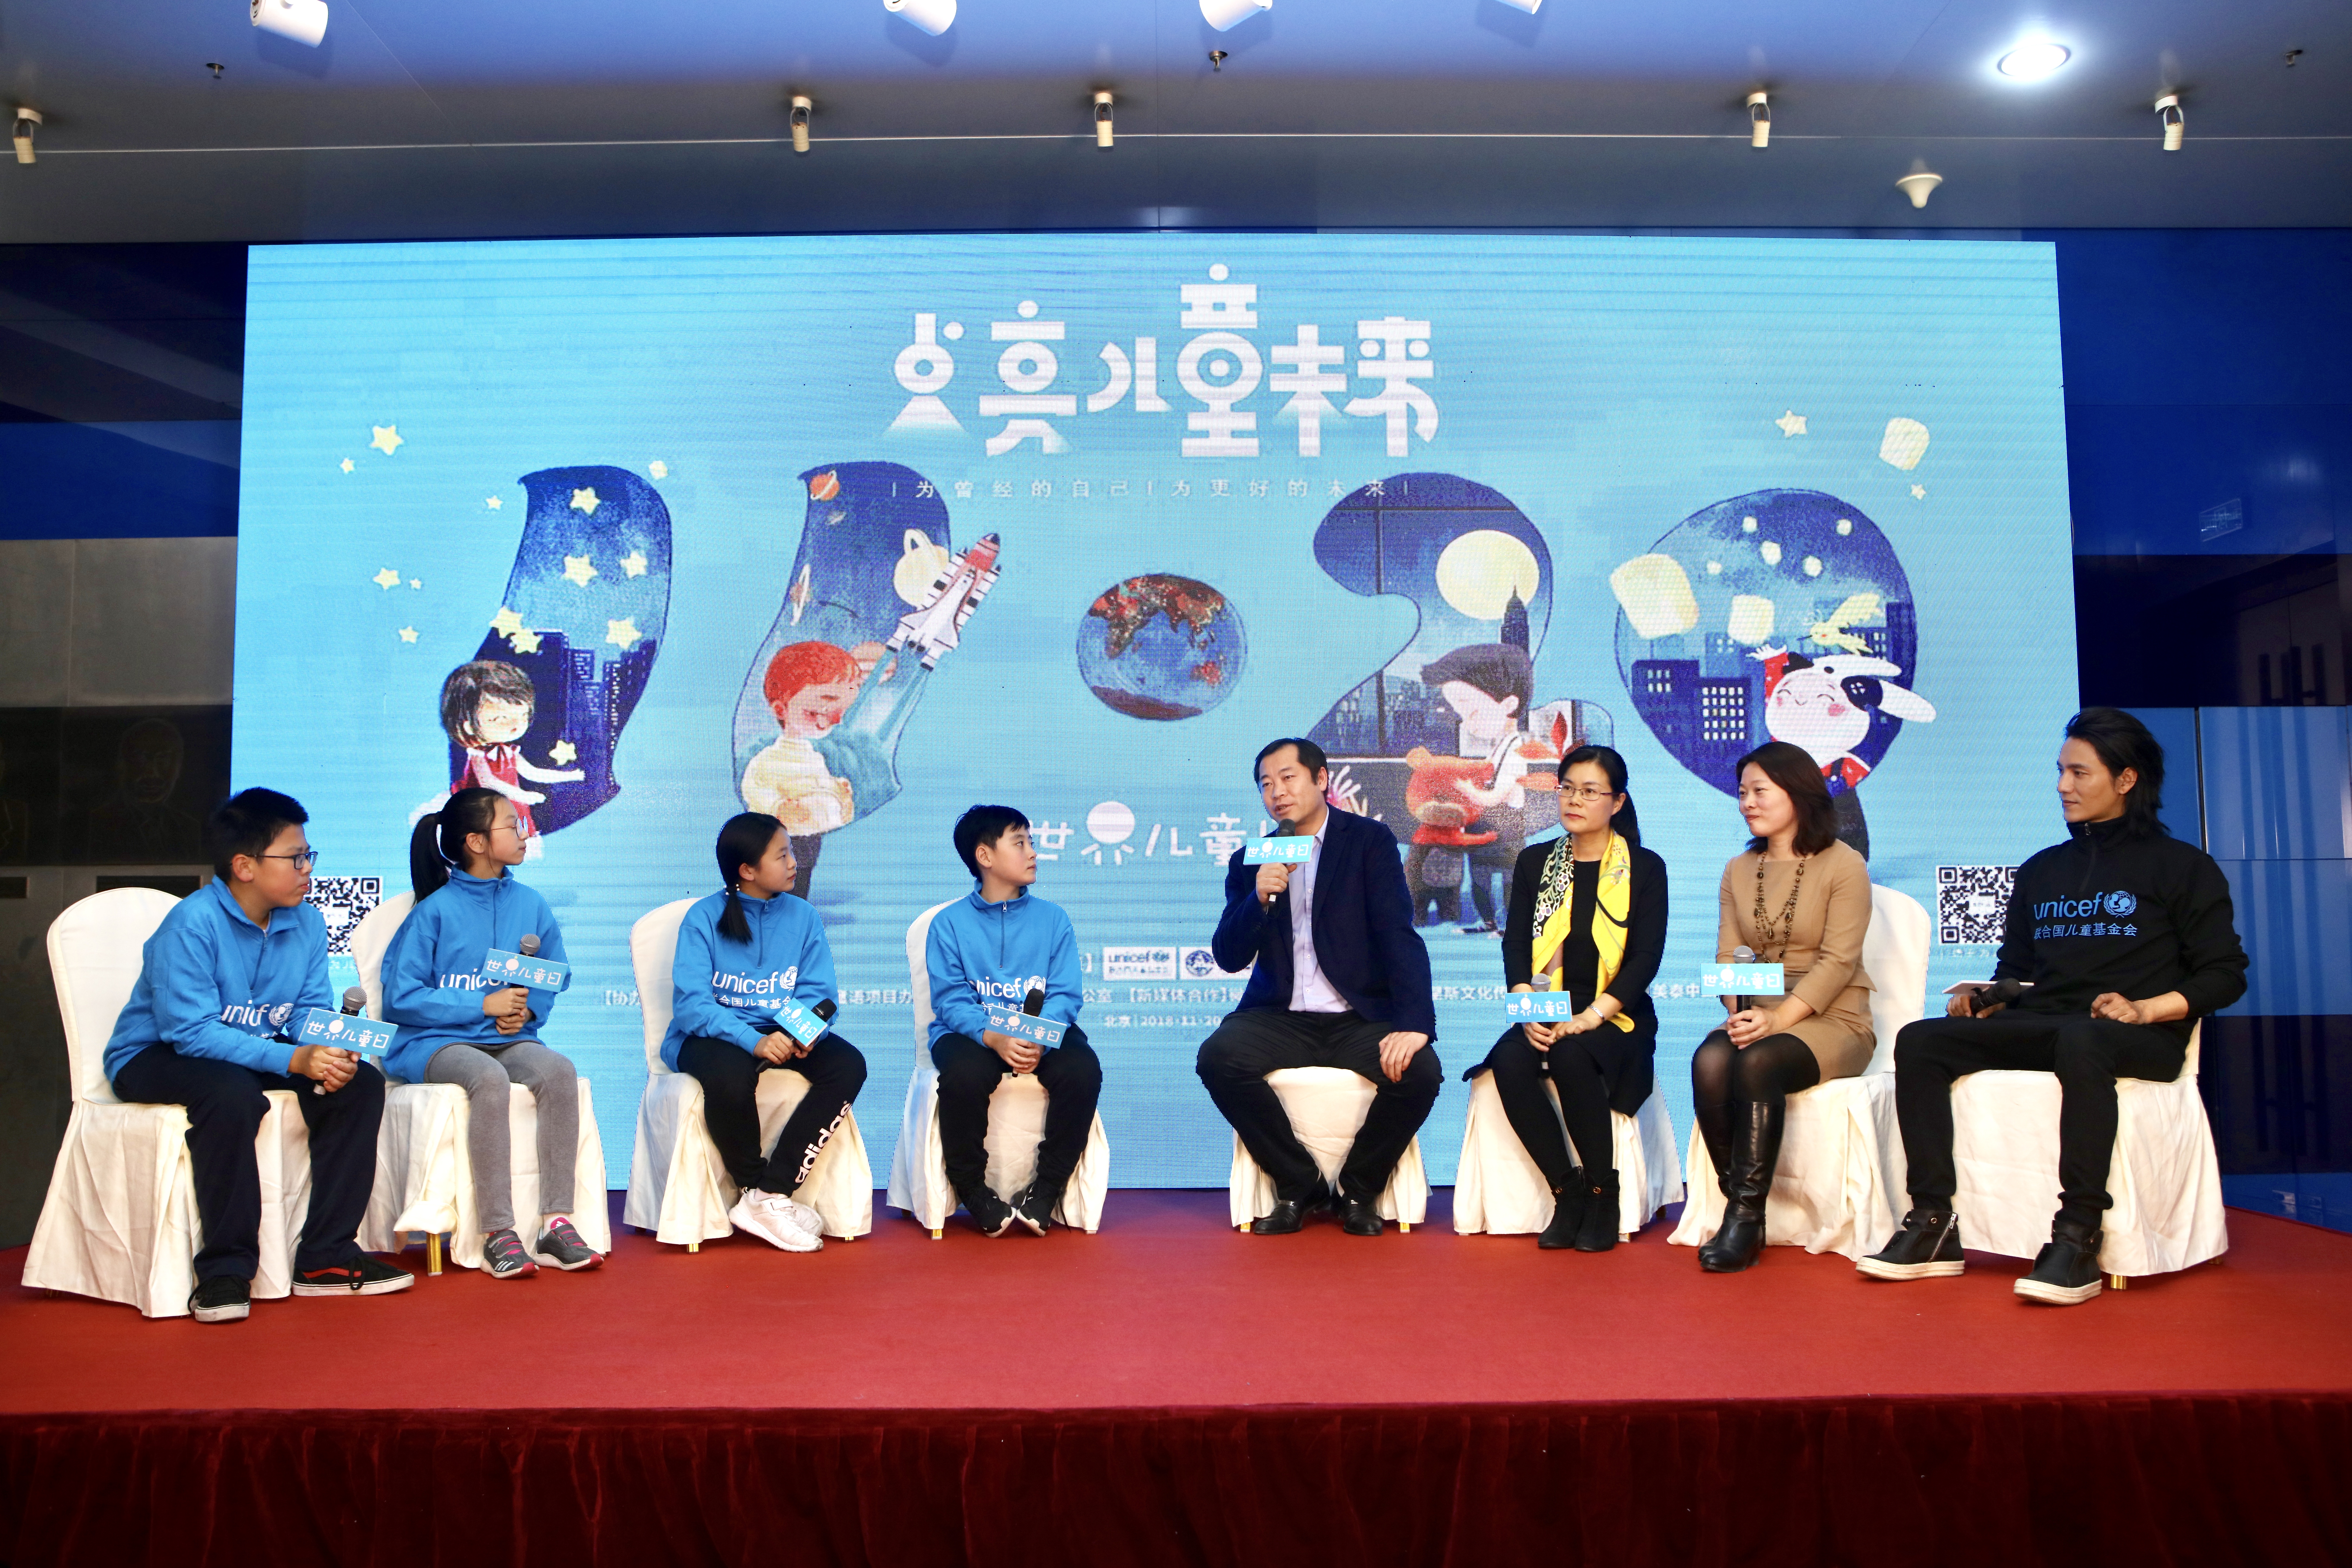 2018年11月20日，在由联合国儿童基金会、新华通讯社、新华网共同主办，并得到中国儿童中心等其他合作伙伴的支持的论坛上，四位儿童代表和四位成人代表共同讨论关系到儿童切身利益的议题。